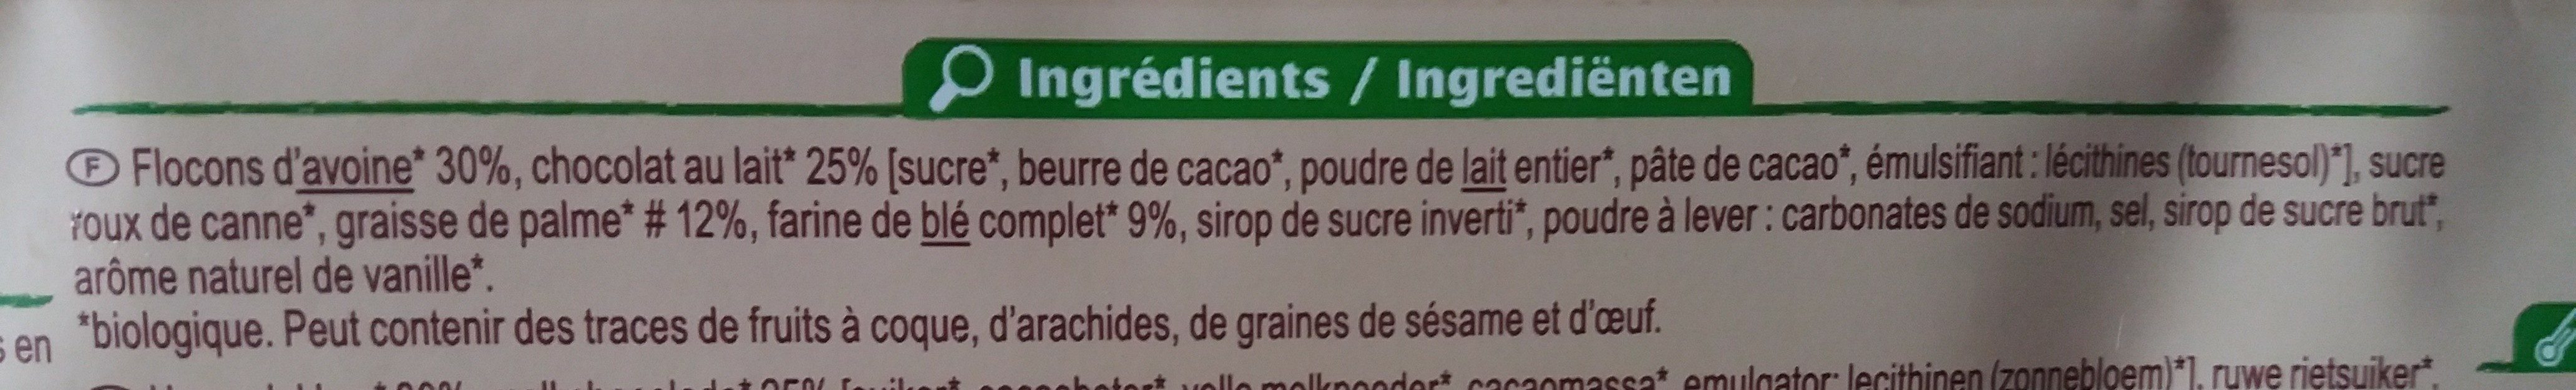 Biscuits complets avoine blé Nappés Chocolat au lait - Ingredients - fr